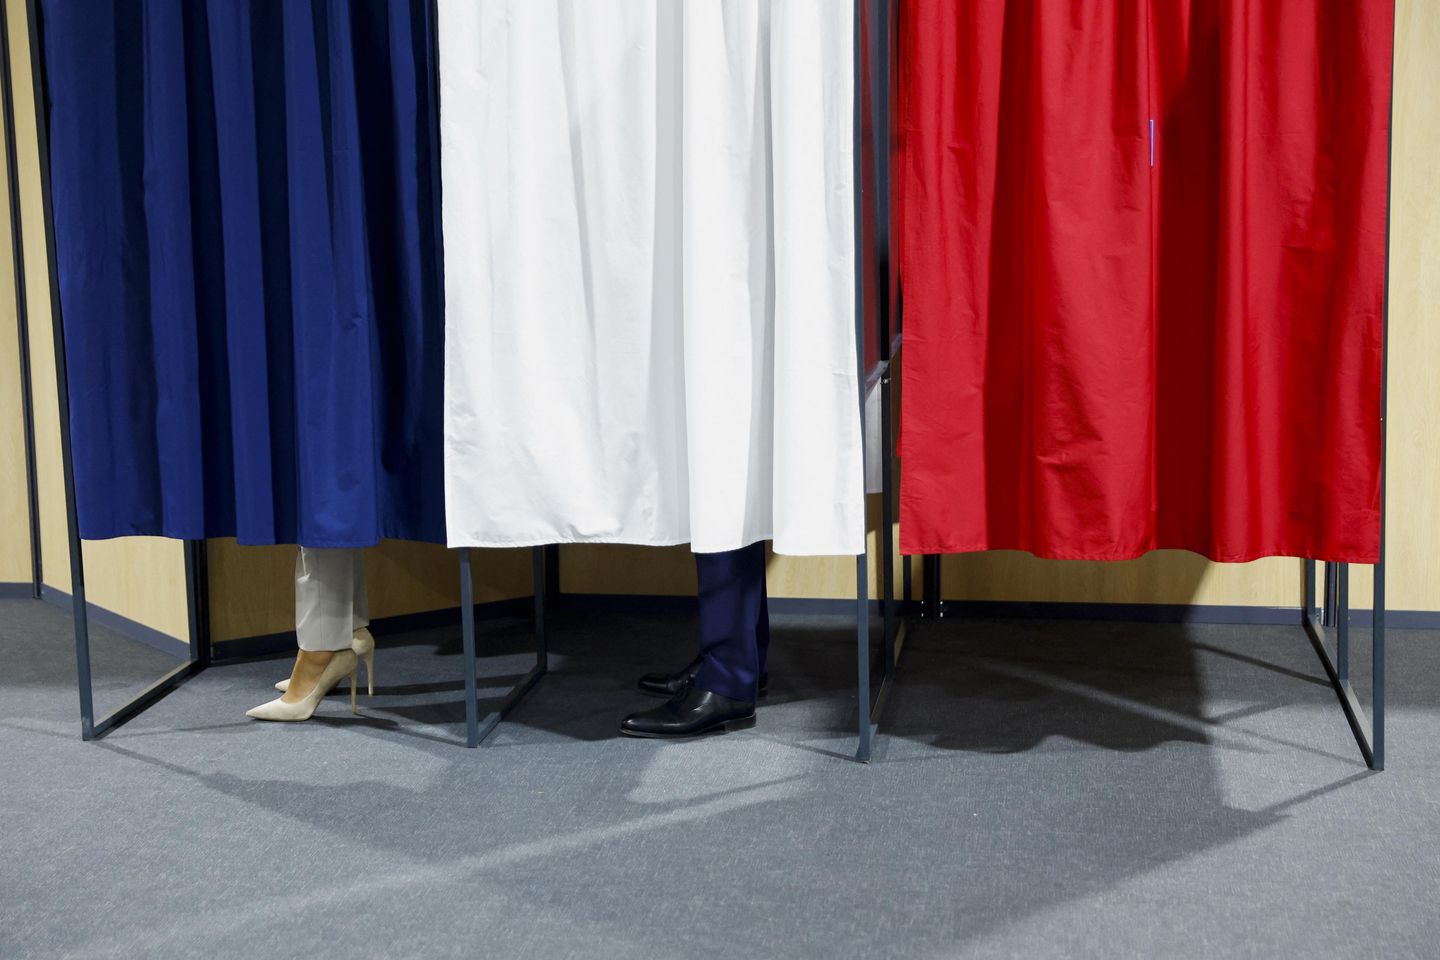 Canlı güncellemeler | Fransa'da seçimlere katılım şu ana kadar düşük